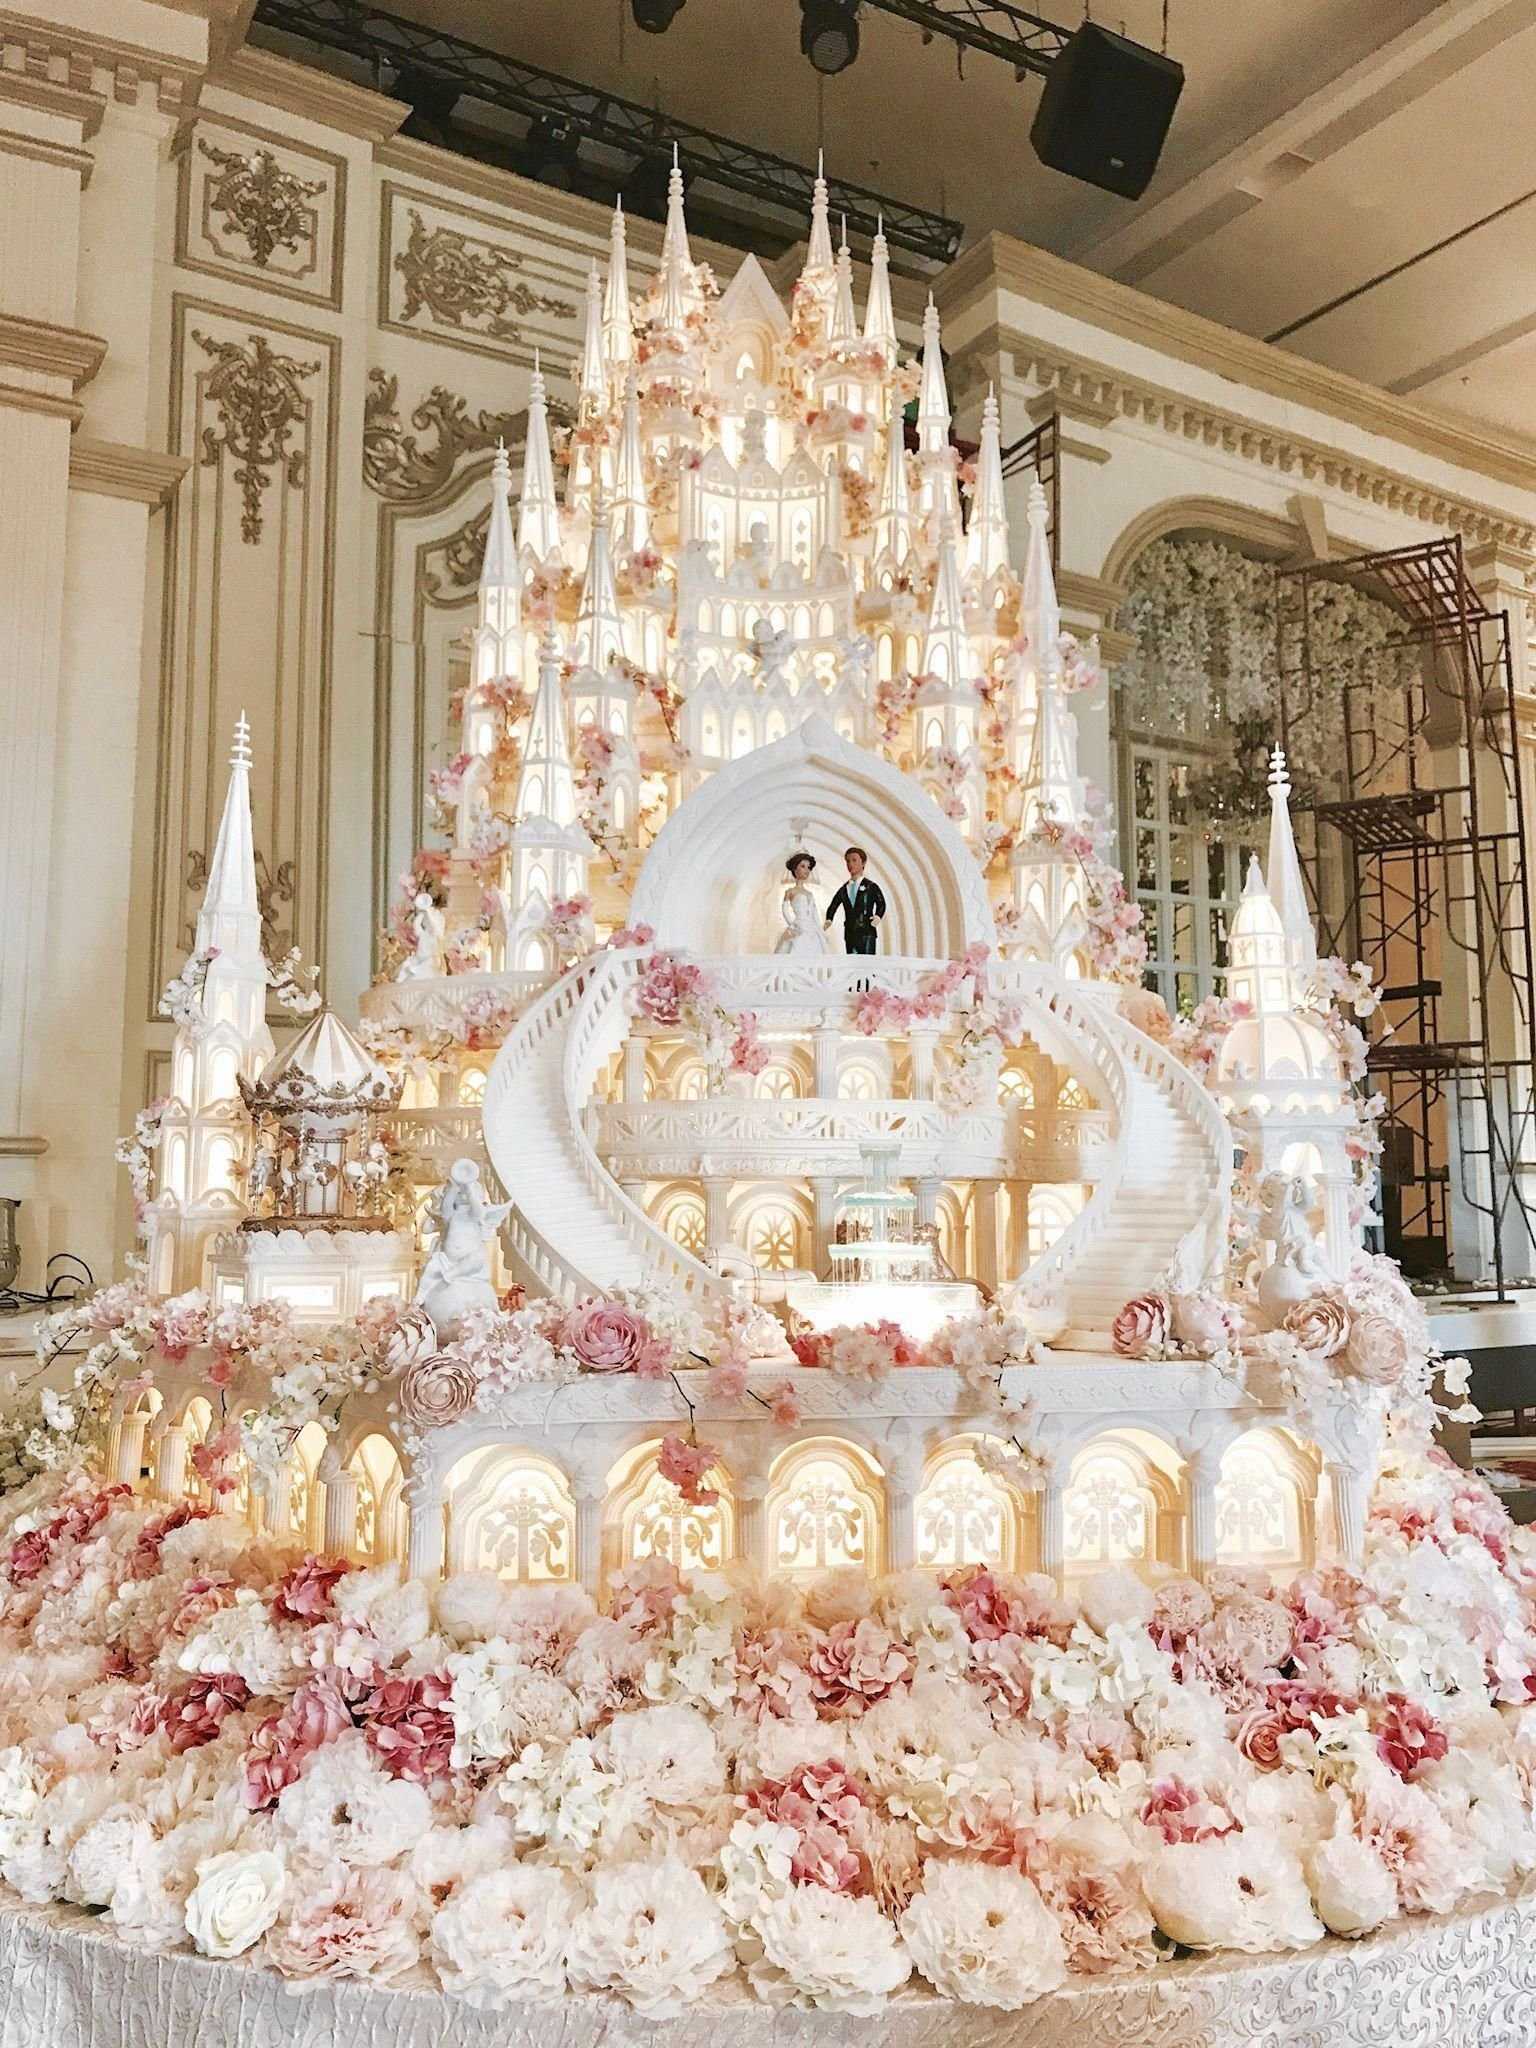 самый большой торт в мире фото